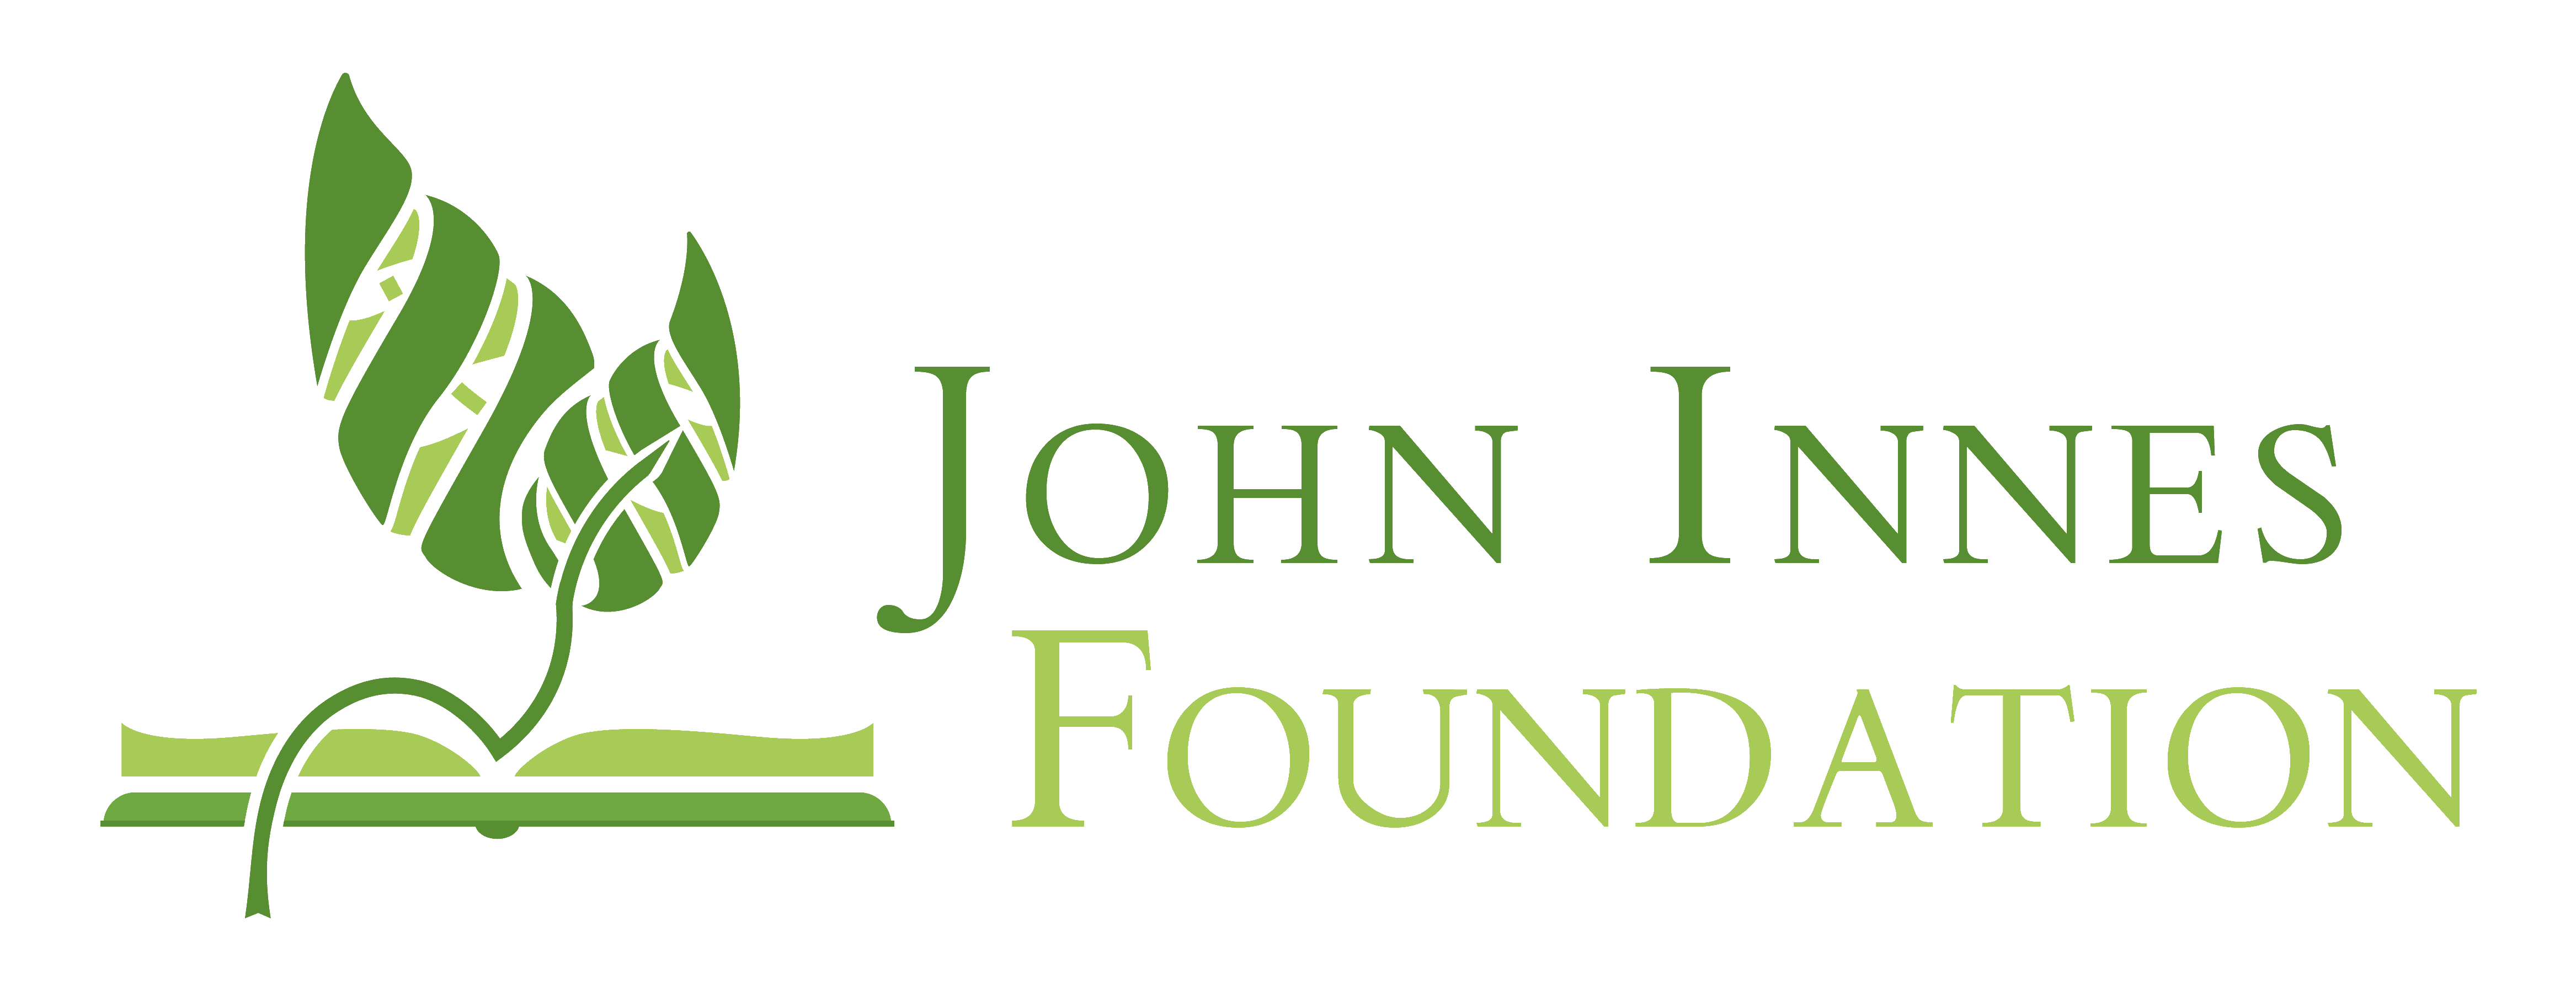 John Innes Foundation